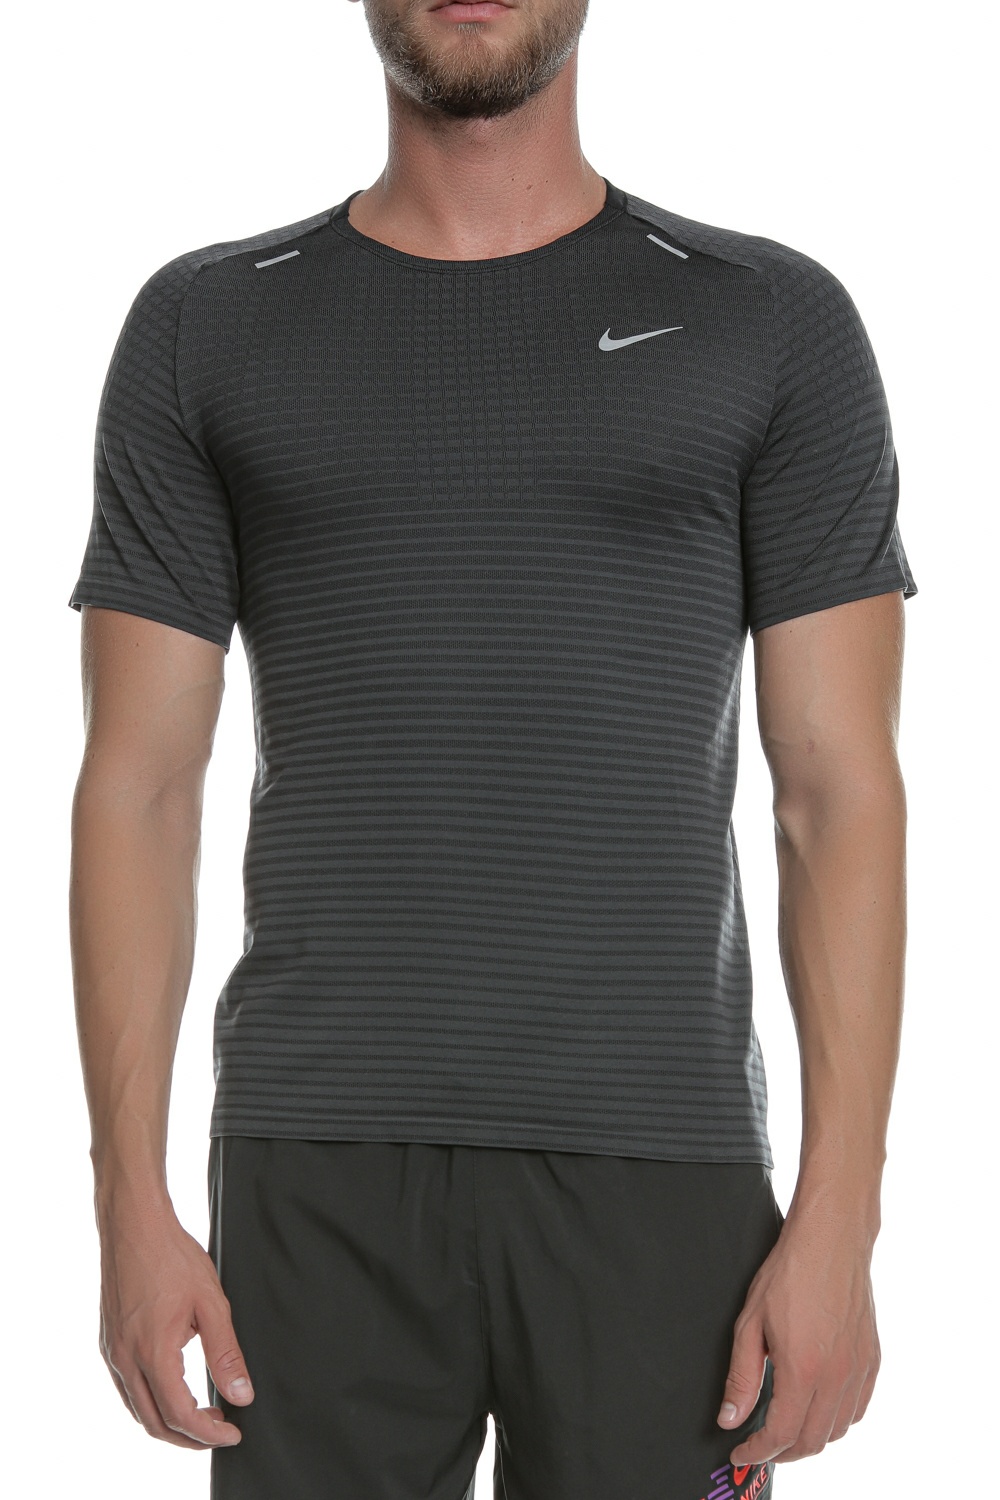 Ανδρικά/Ρούχα/Αθλητικά/T-shirt NIKE - Ανδρική μπλούζα NIKE TECHKNIT ULTRA μαύρη